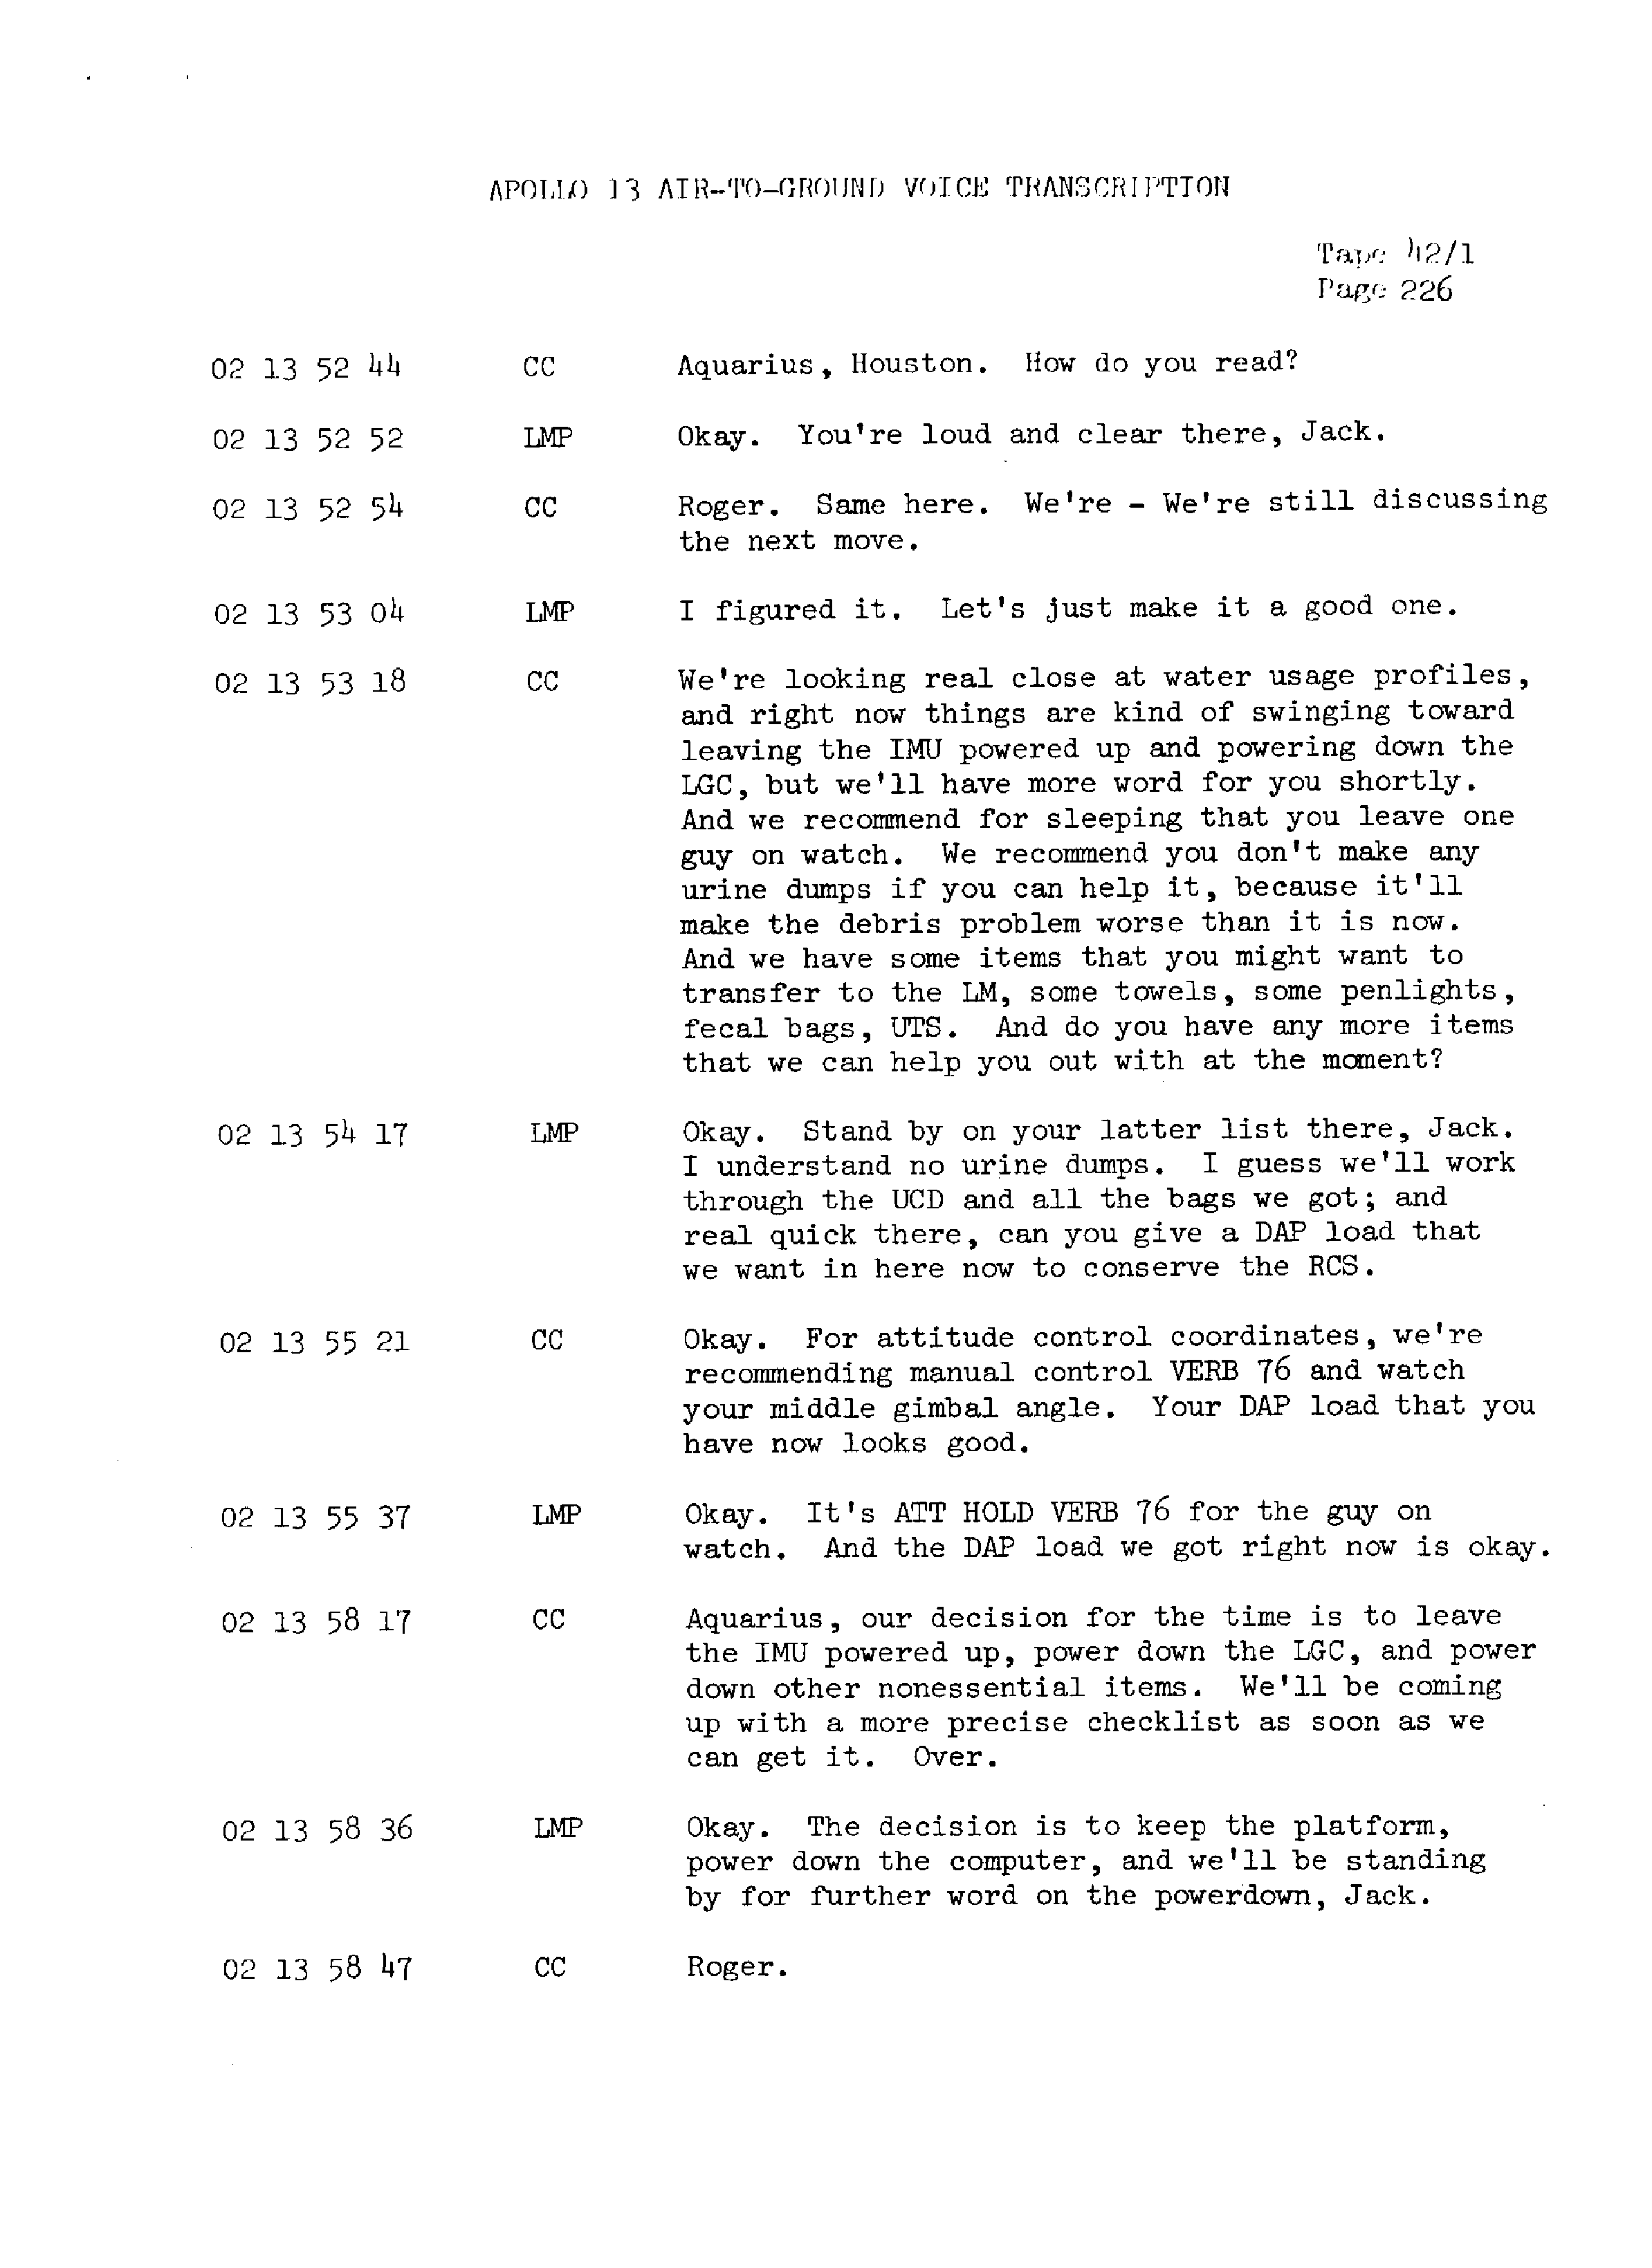 Page 233 of Apollo 13’s original transcript